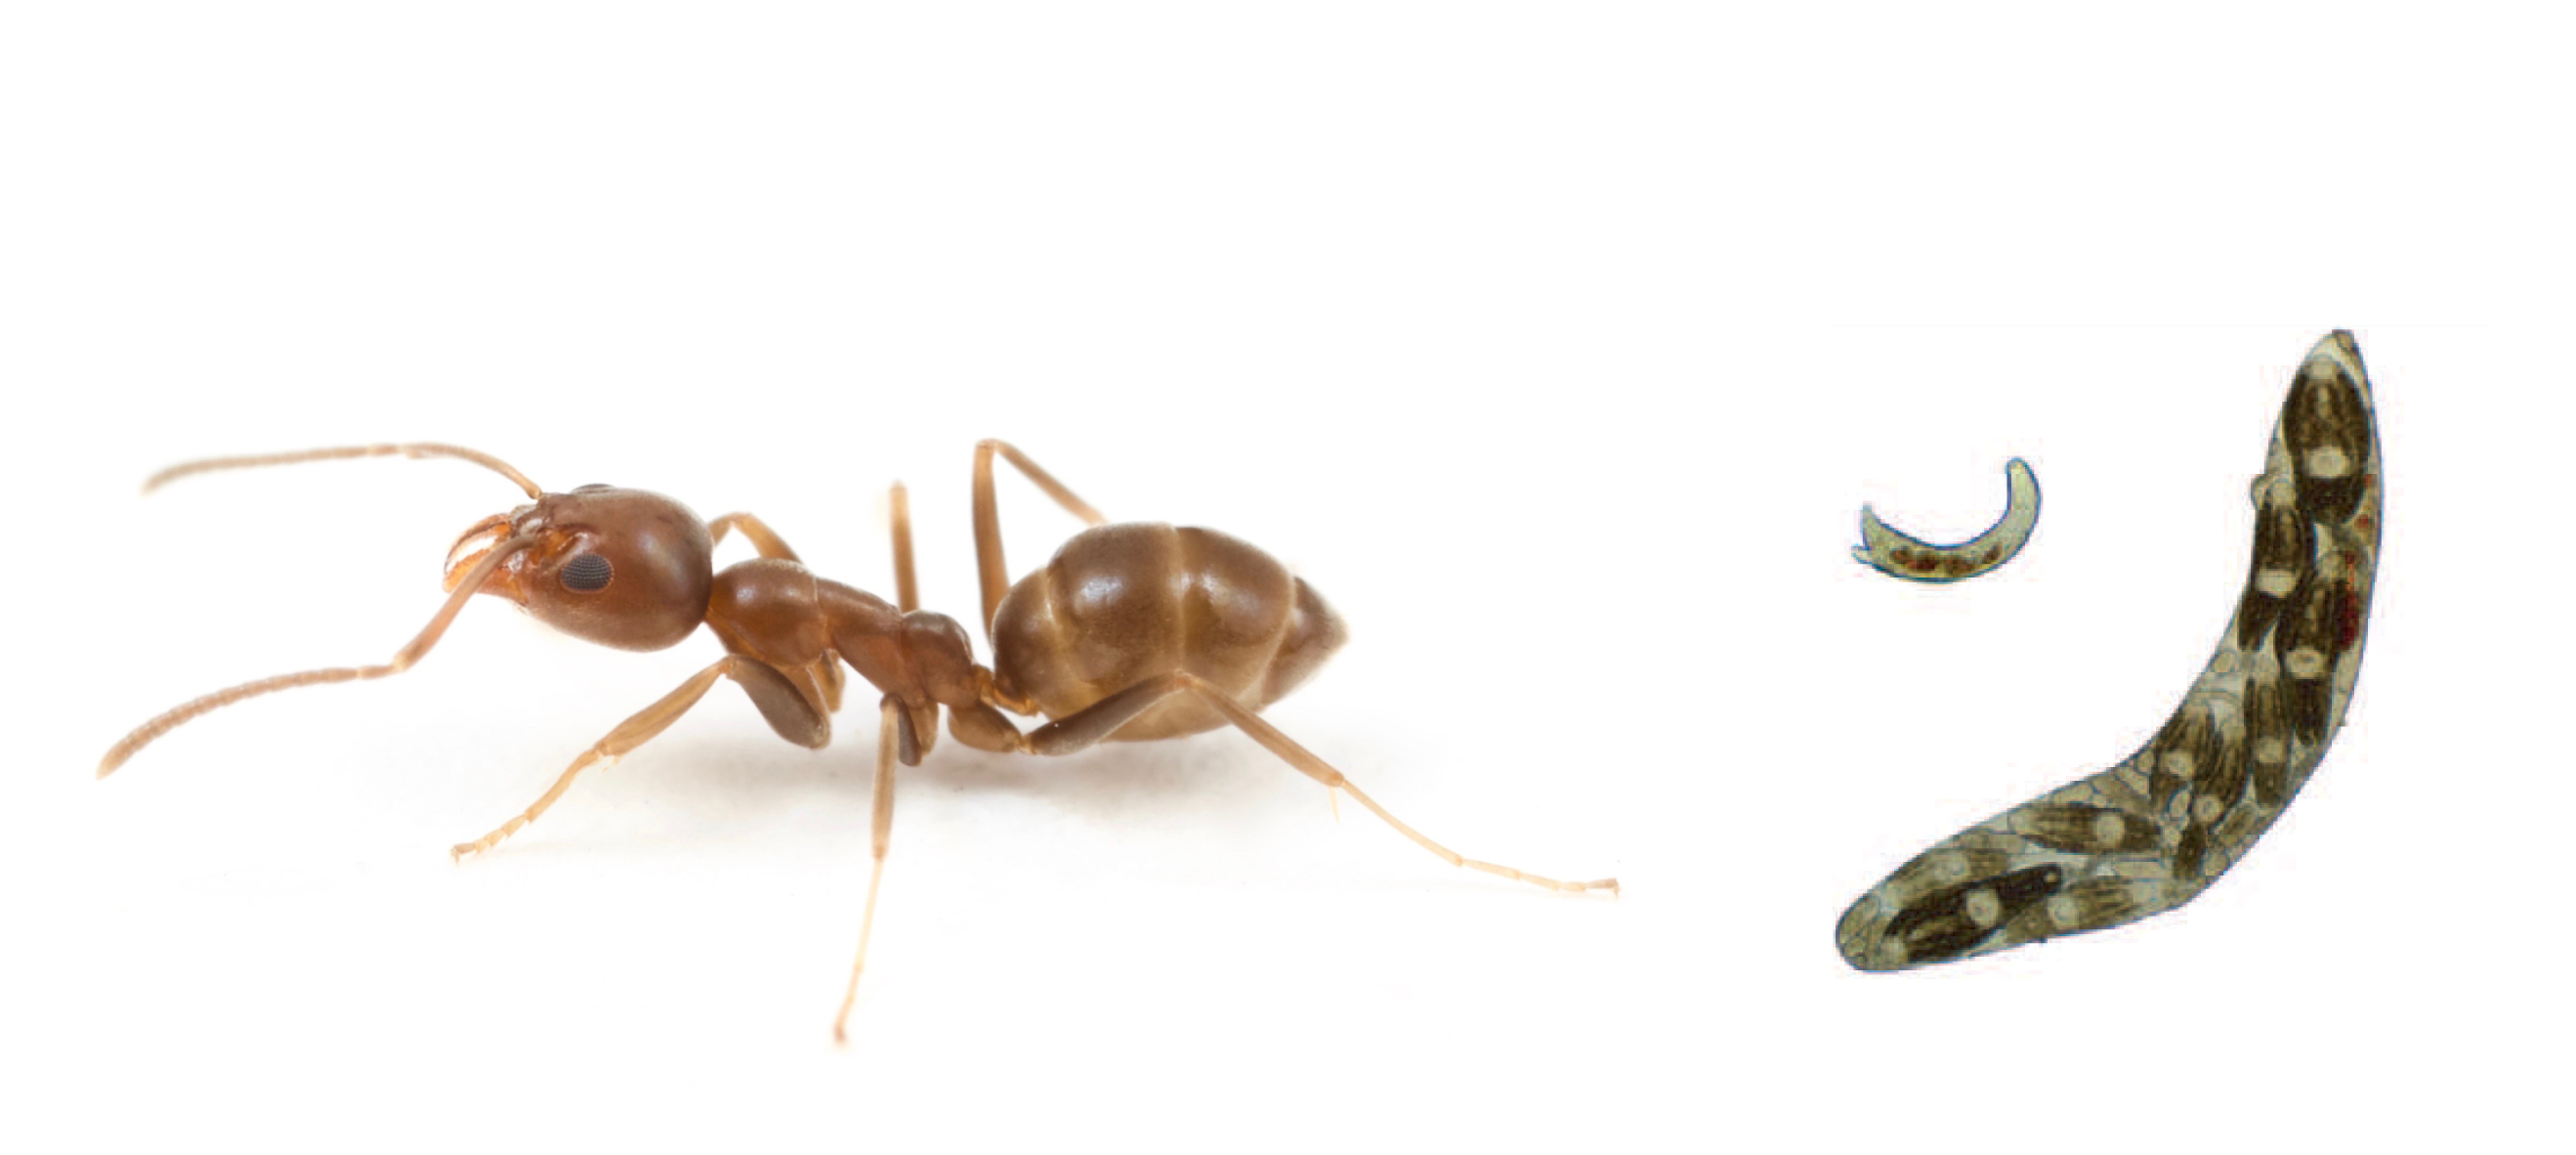 Ants & trematodes